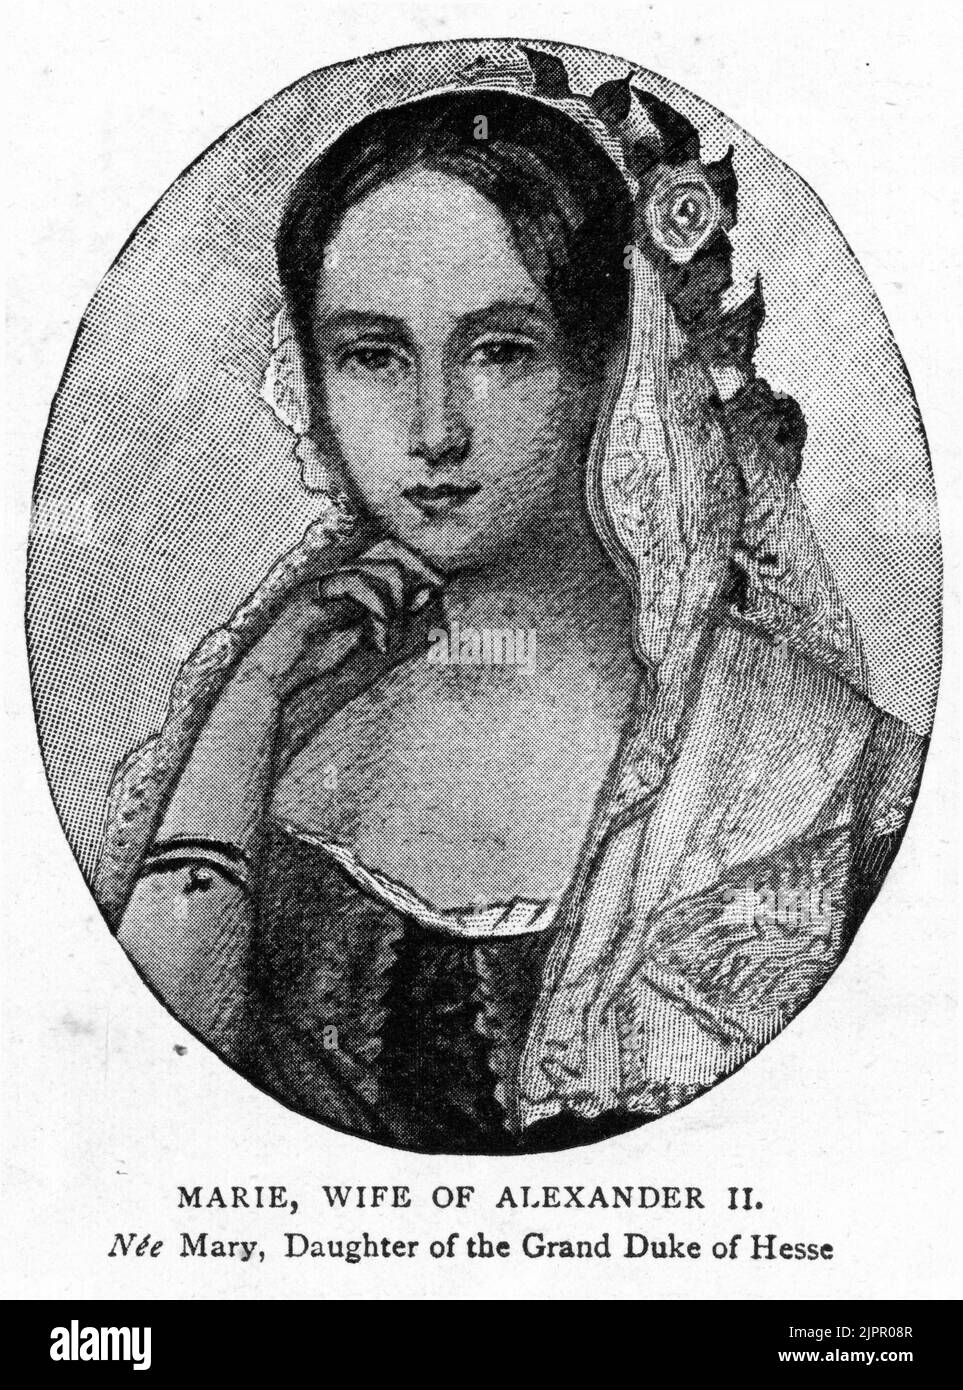 Maria Alexandrovna, née la princesse Marie de Hesse et du Rhin (1824 – 1880), impératrice de Russie en tant que première épouse et conseillère politique de l'empereur Alexandre II Banque D'Images